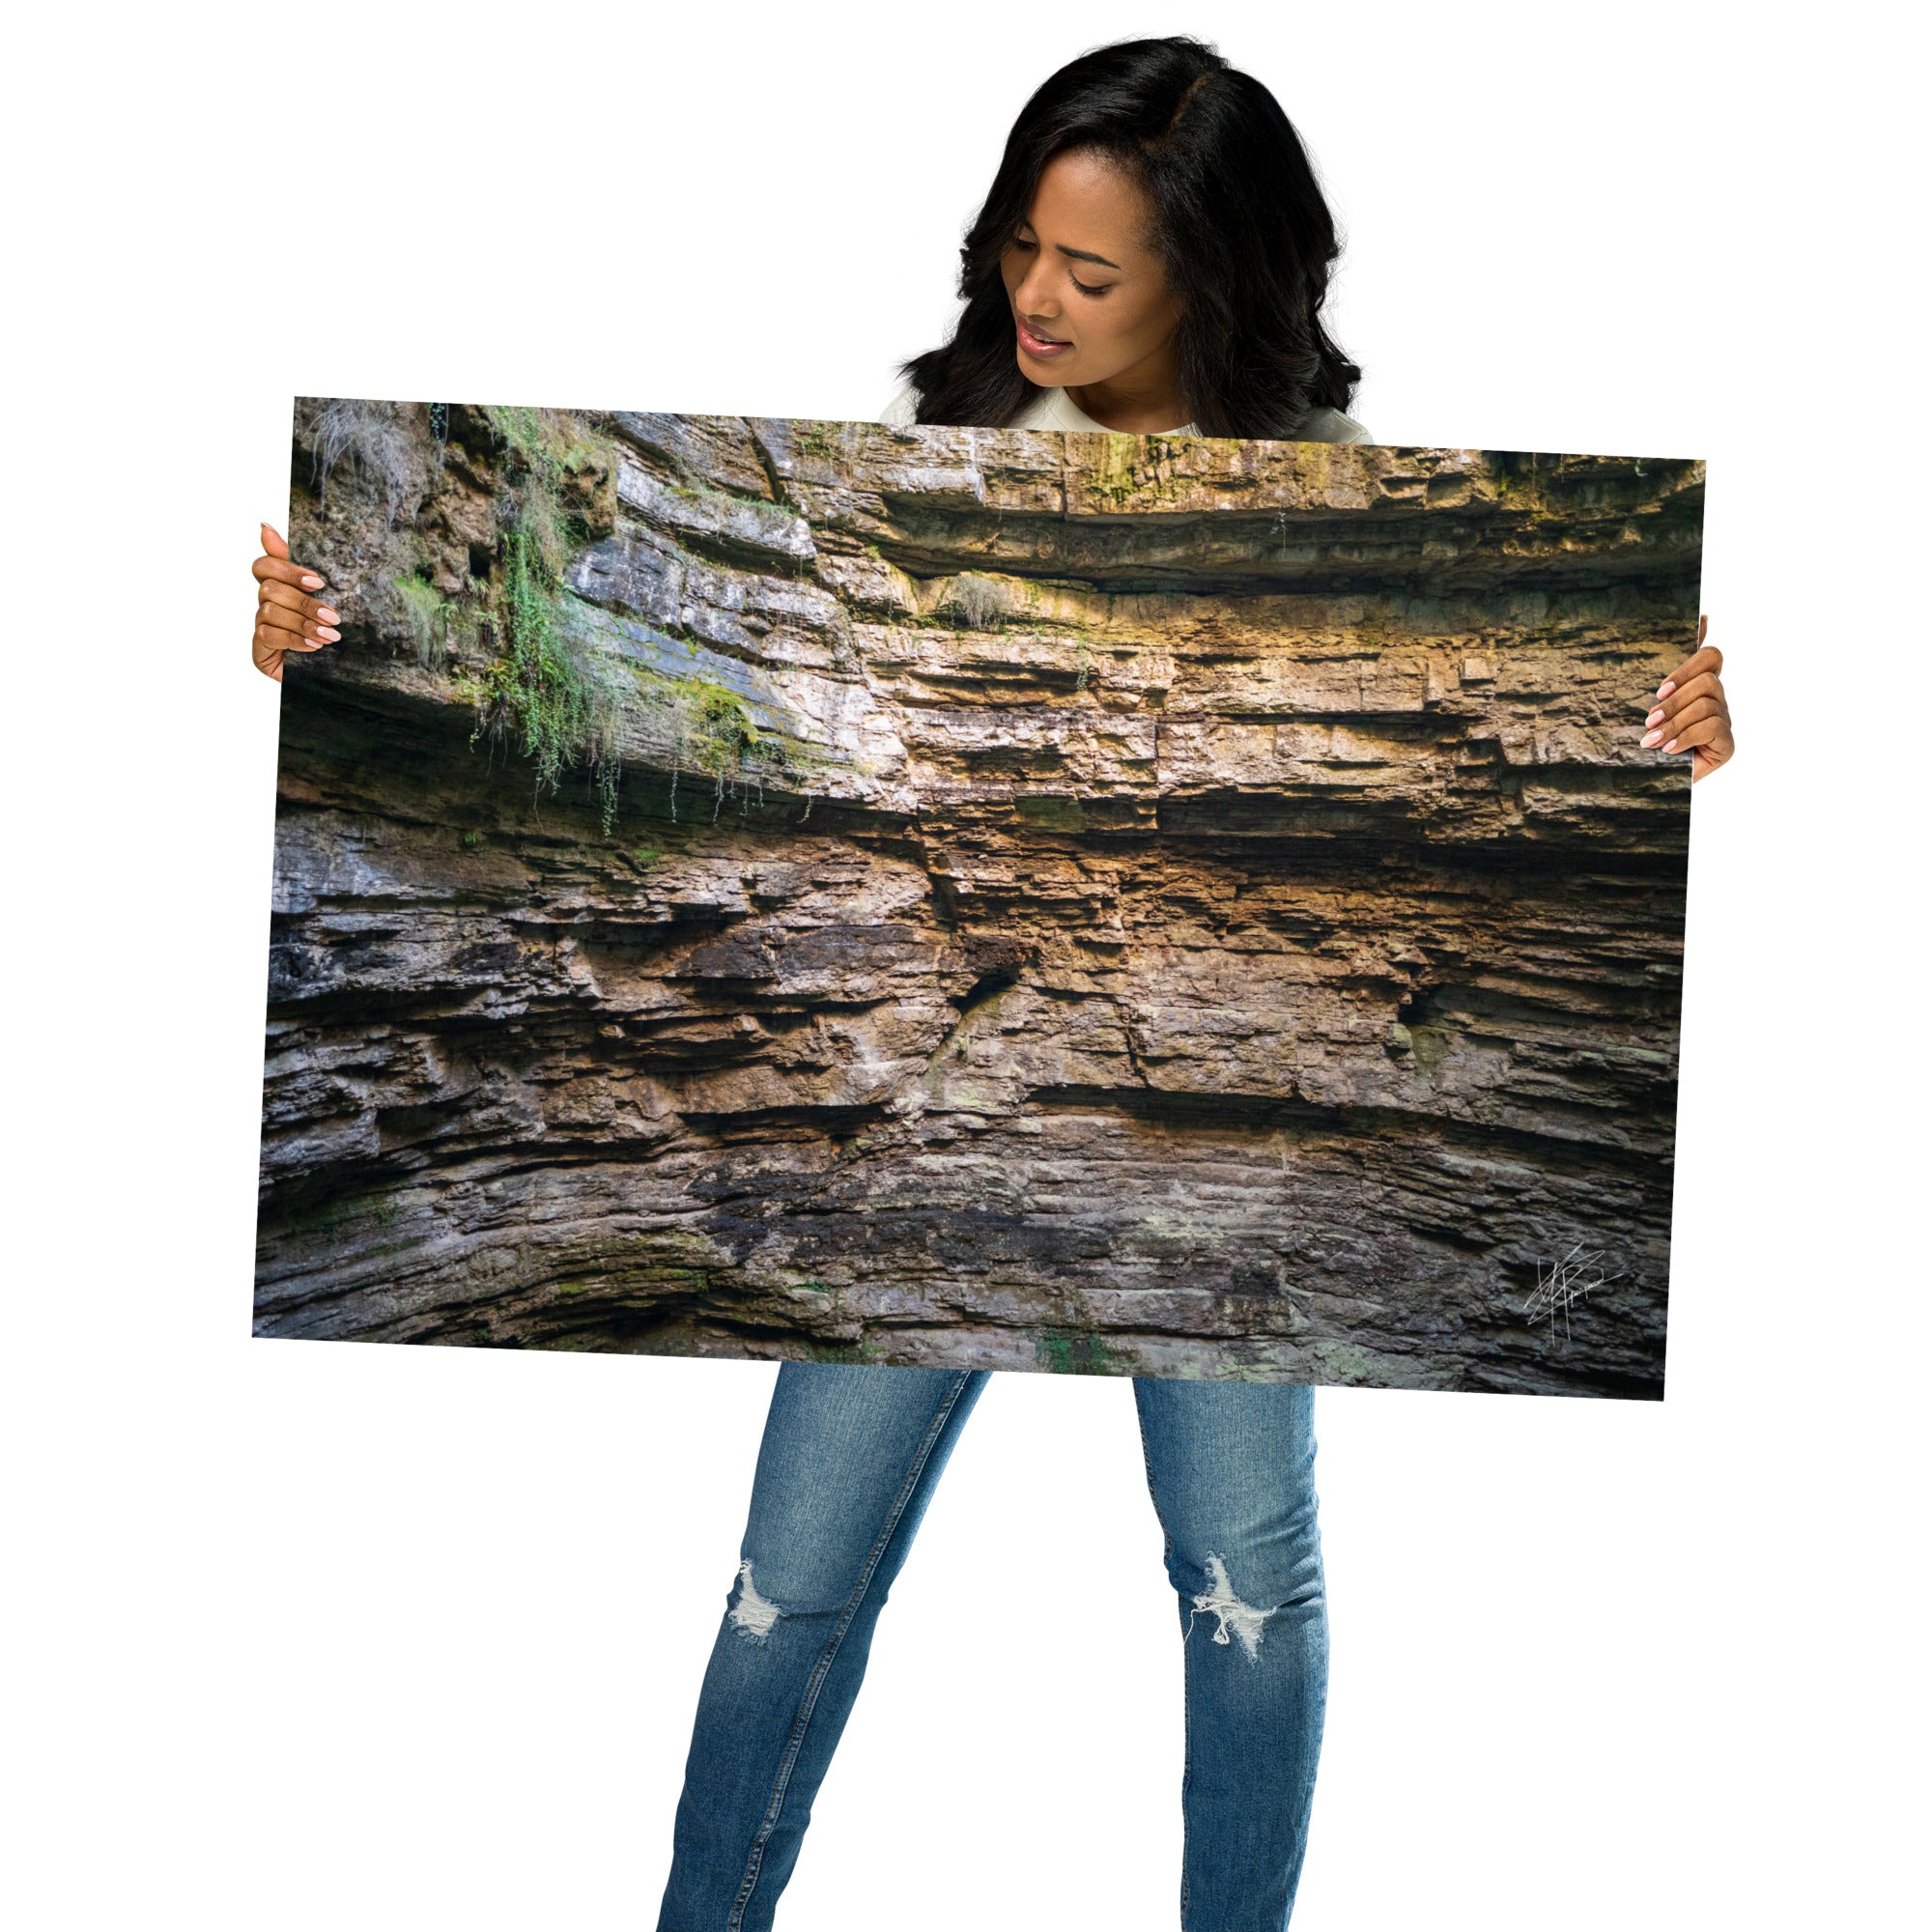 Photographie détaillée d'un mur de roche souterrain au gouffre de Padirac montrant des couches distinctes et des signes d'érosion.